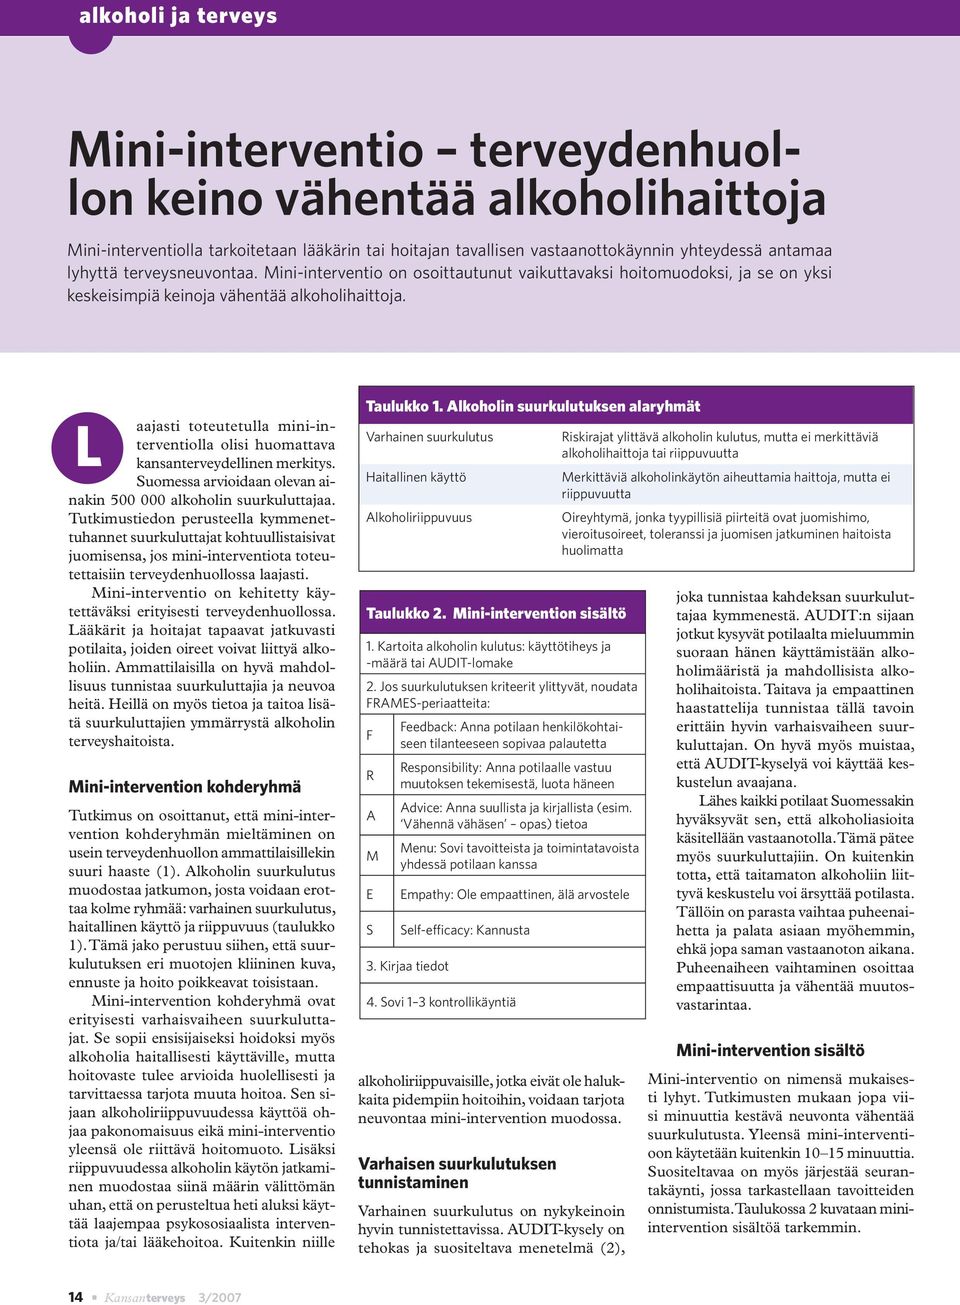 L aajasti toteutetulla mini-interventiolla olisi huomattava kansanterveydellinen merkitys. Suomessa arvioidaan olevan ainakin 500 000 alkoholin suurkuluttajaa.